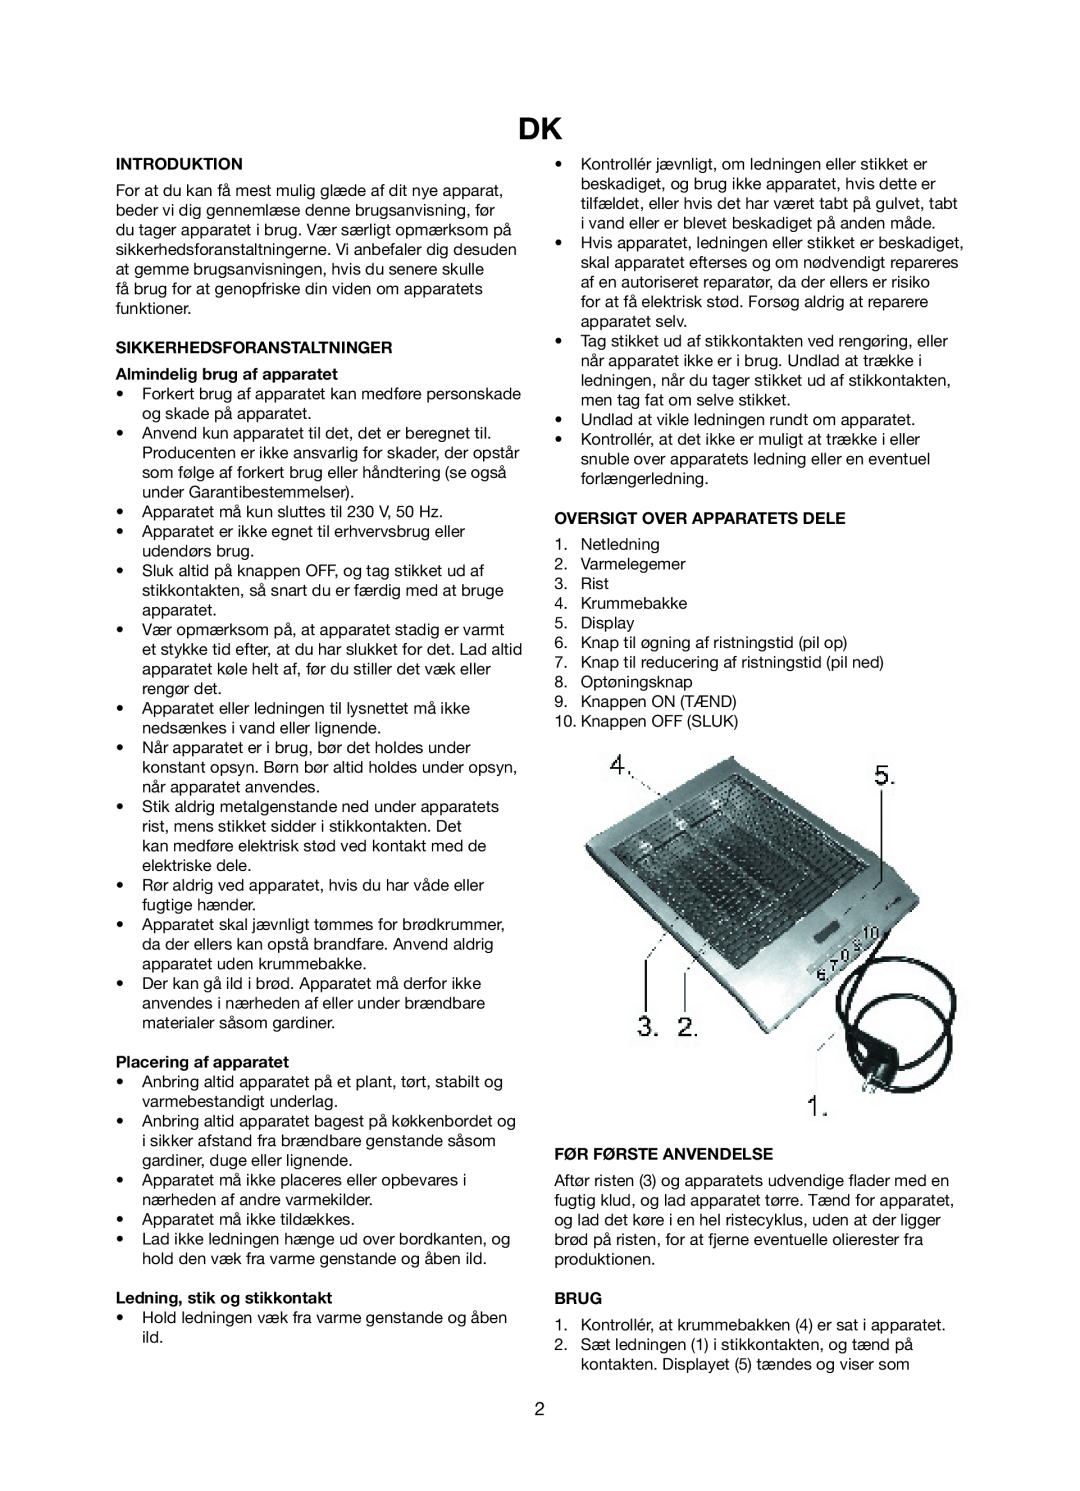 Exido 243-031 manual Introduktion, SIKKERHEDSFORANSTALTNINGER Almindelig brug af apparatet, Placering af apparatet, Brug 